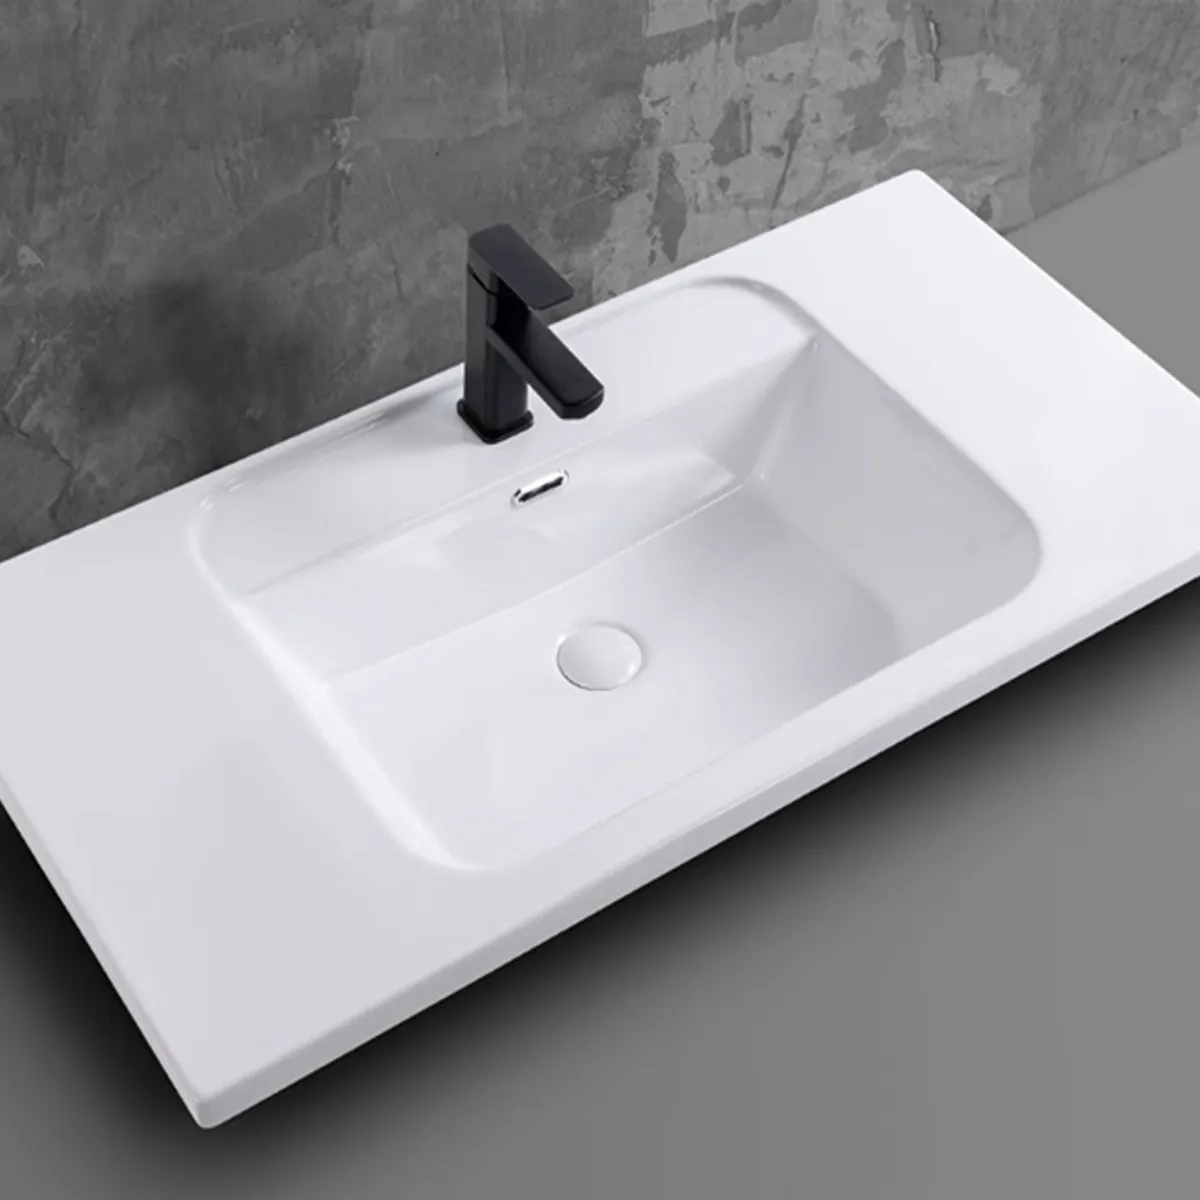 Thiết kế hiện đại và đẳng cấp với chậu rửa lavabo âm bàn PLD-668B. Một nét đẹp tinh tế cho không gian phòng tắm của bạn.